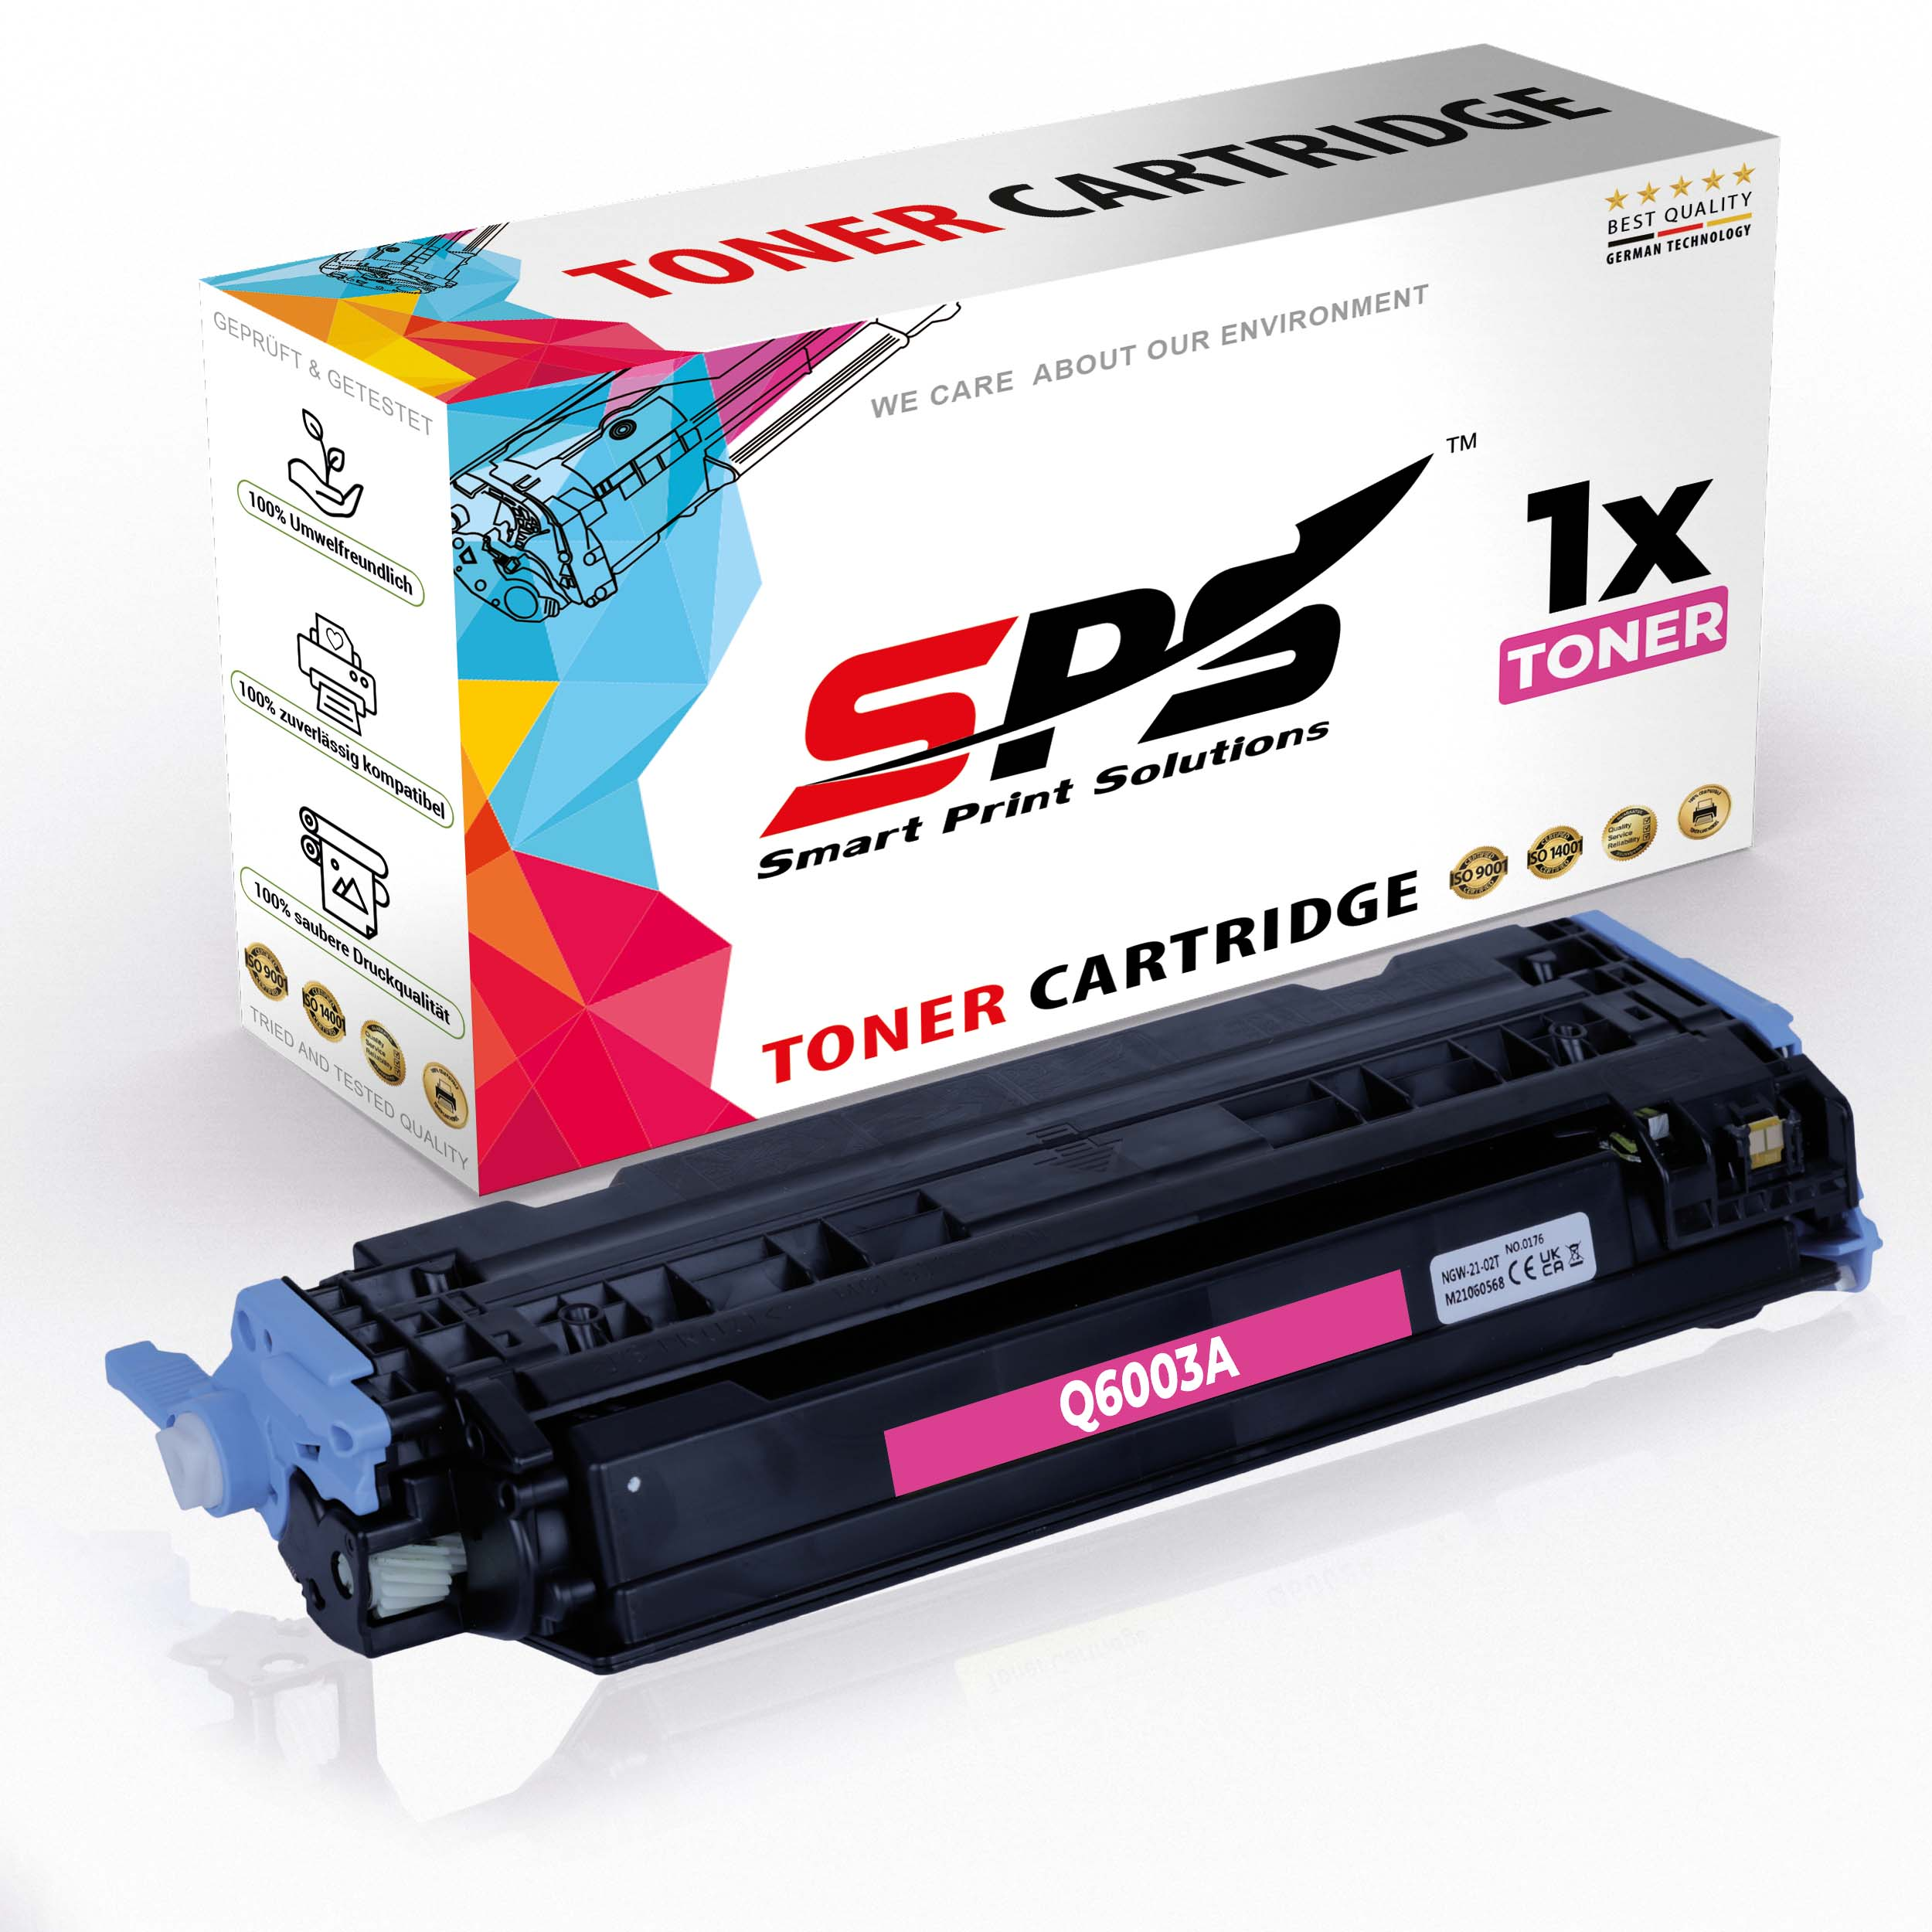 Magenta Laserjet 124A (Q6003A Toner S-8219 / 1600LN) Color SPS